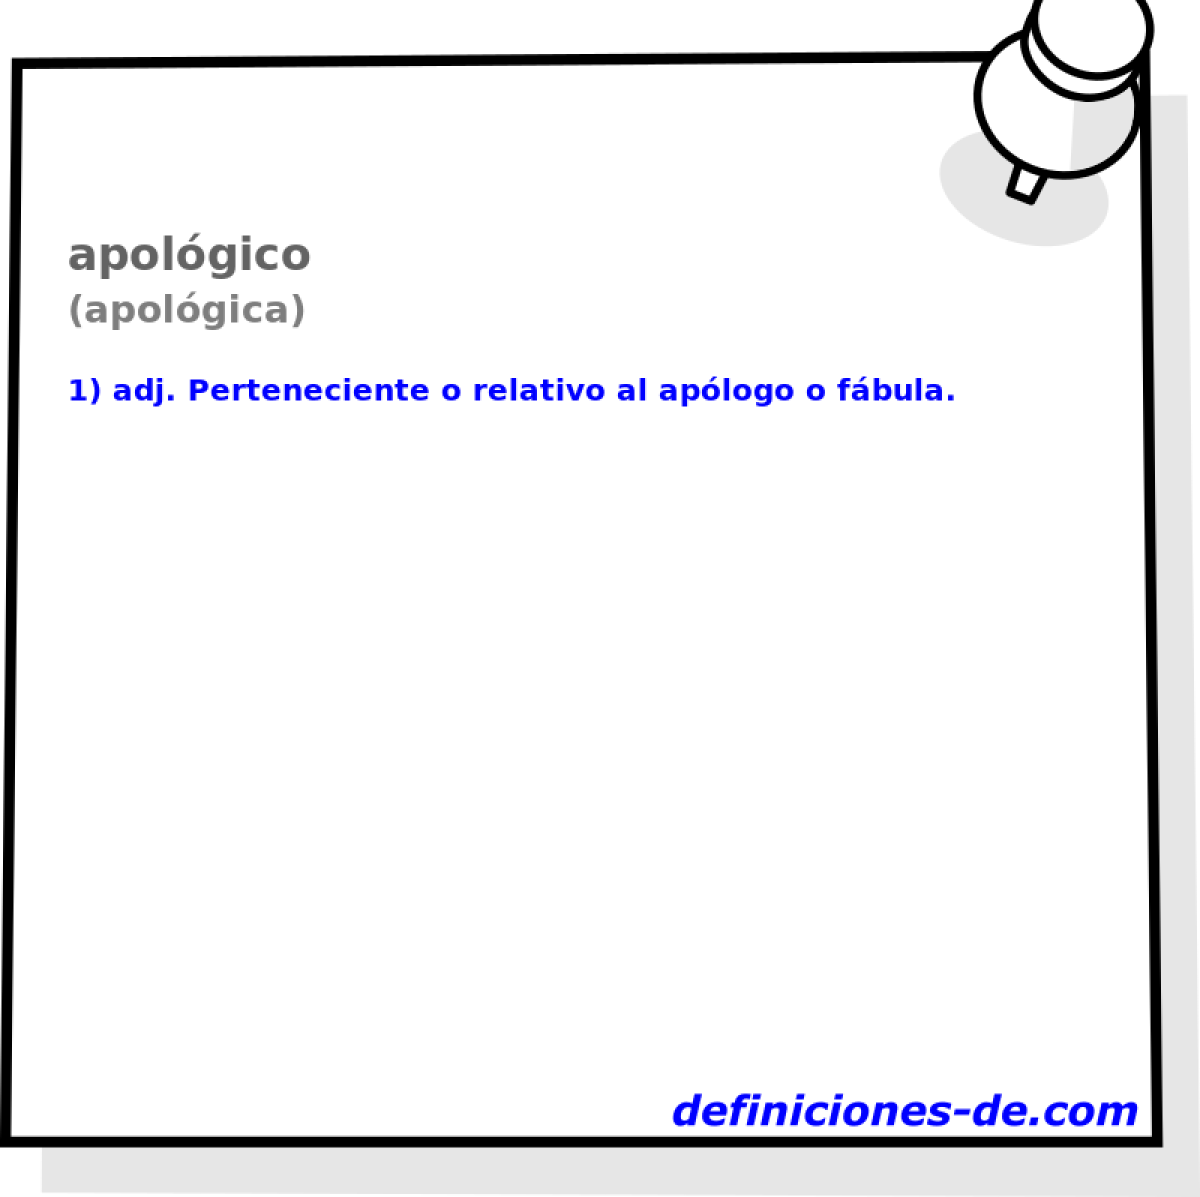 apolgico (apolgica)